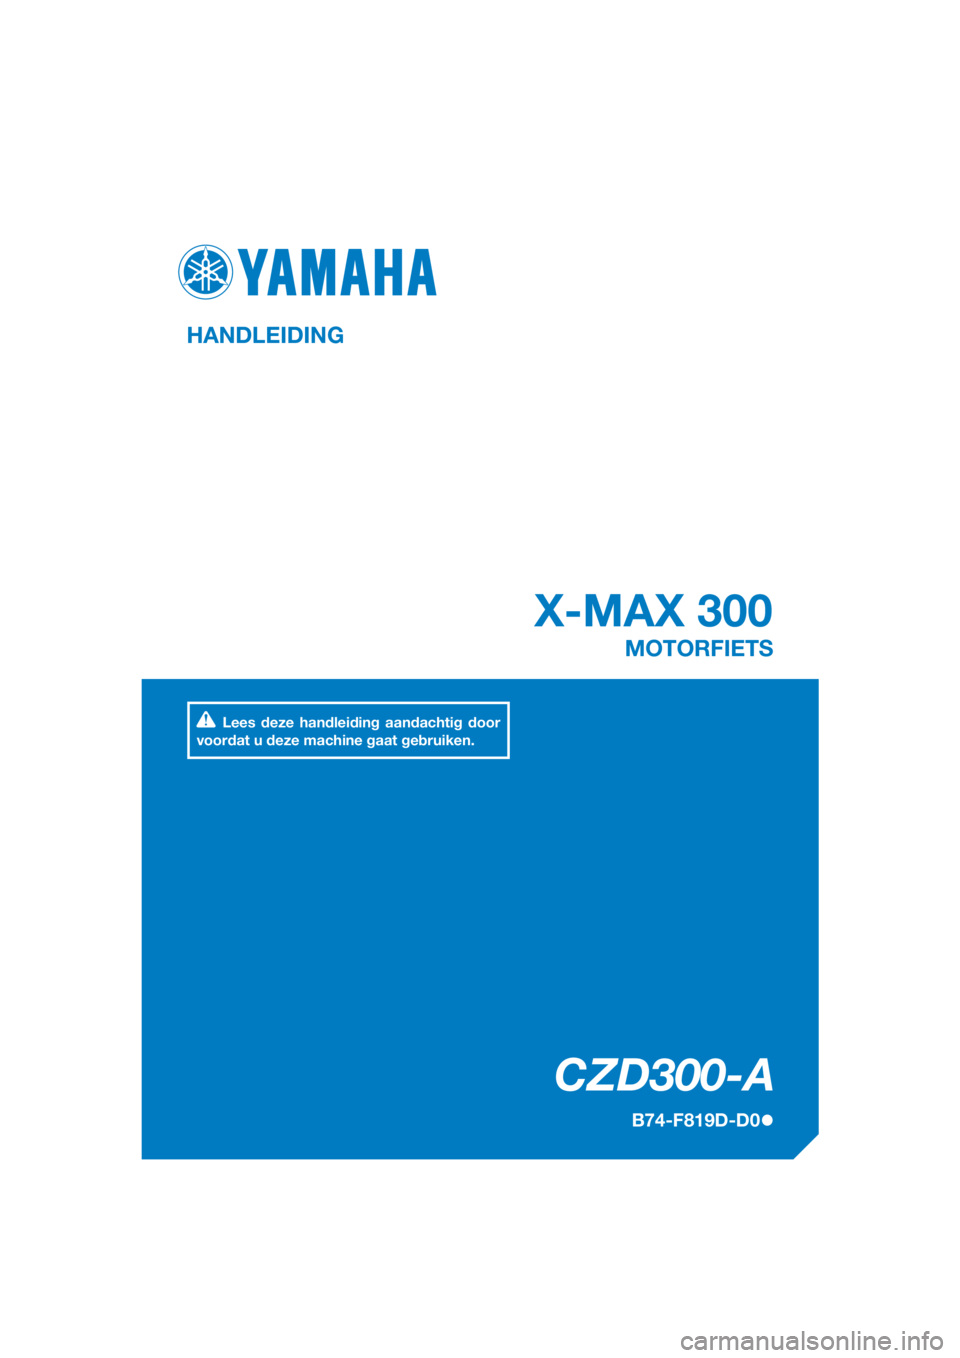 YAMAHA XMAX 300 2017  Instructieboekje (in Dutch) DIC183
CZD300-A
X-MAX 300
HANDLEIDING
B74-F819D-D0
MOTORFIETS
Lees deze handleiding aandachtig door 
voordat u deze machine gaat gebruiken.
[Dutch  (D)] 